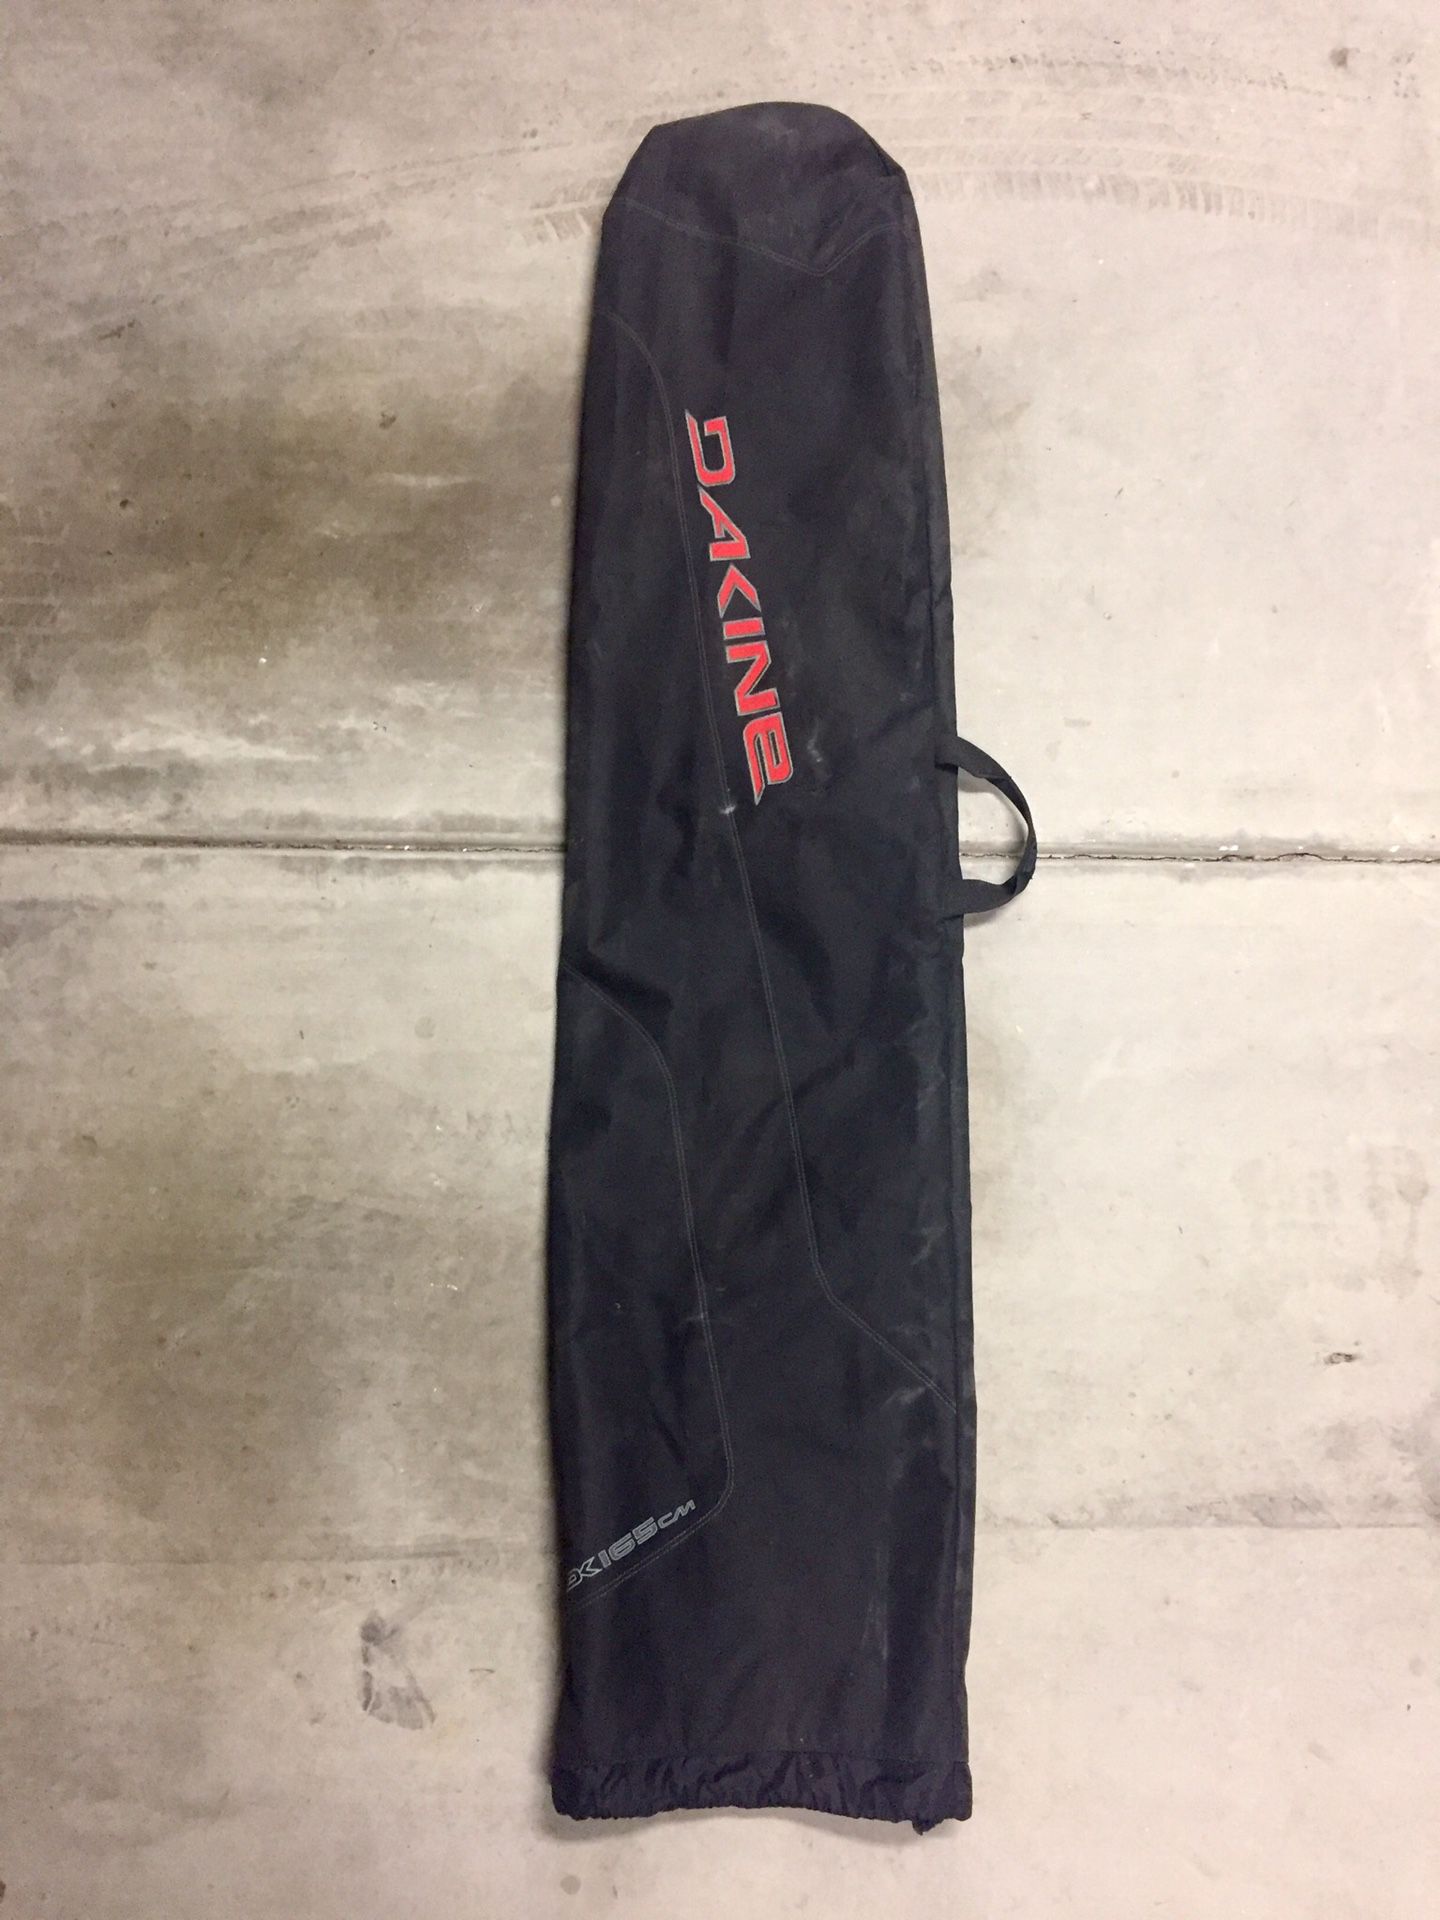 Dakine snowboard bag